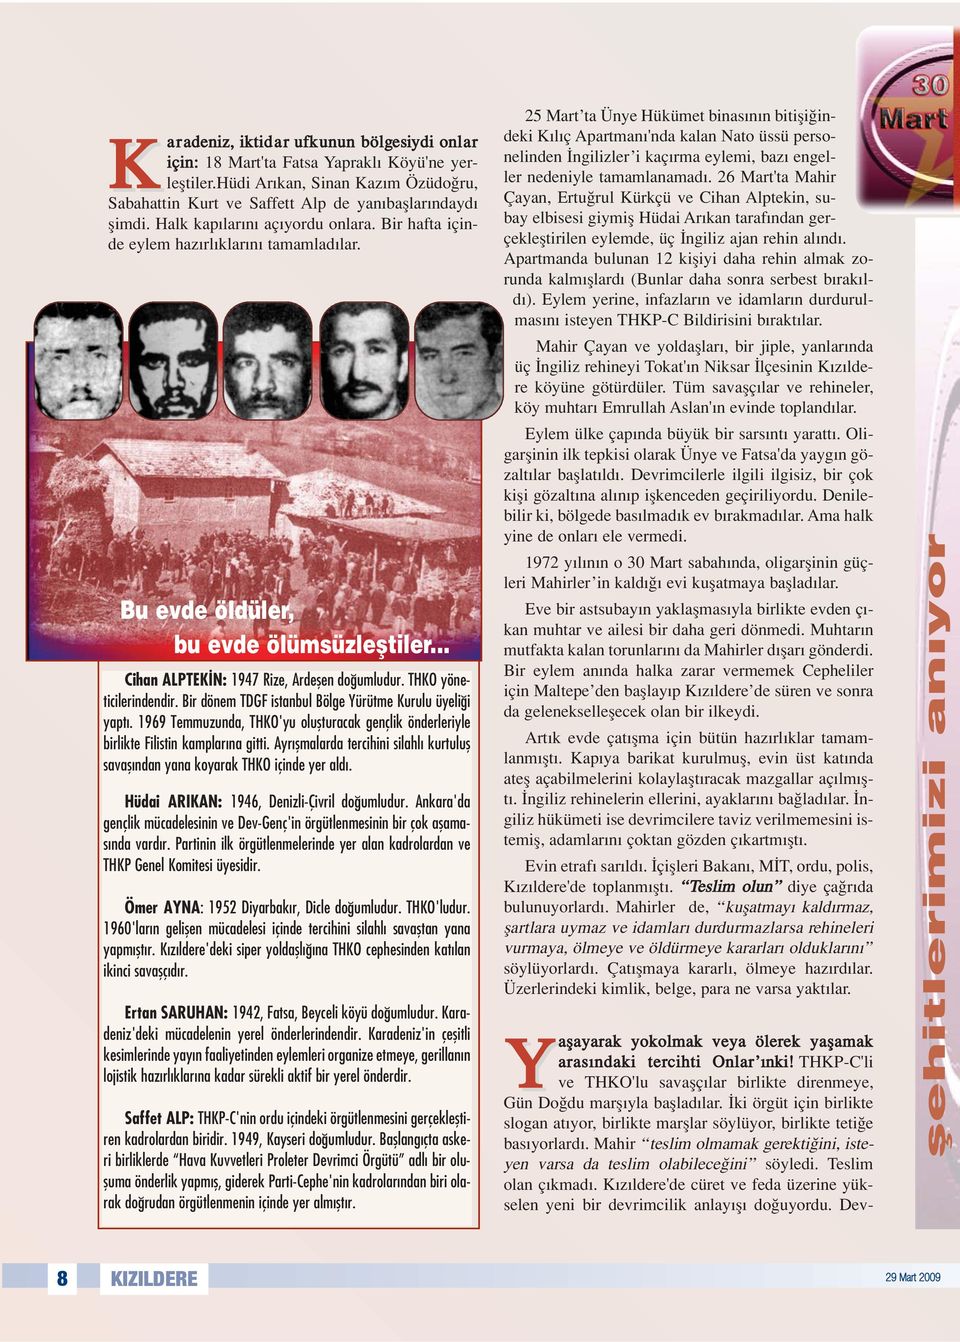 THKO yöneticilerindendir. Bir dönem TDGF istanbul Bölge Yürütme Kurulu üyeli i yapt. 1969 Temmuzunda, THKO'yu oluflturacak gençlik önderleriyle birlikte Filistin kamplar na gitti.